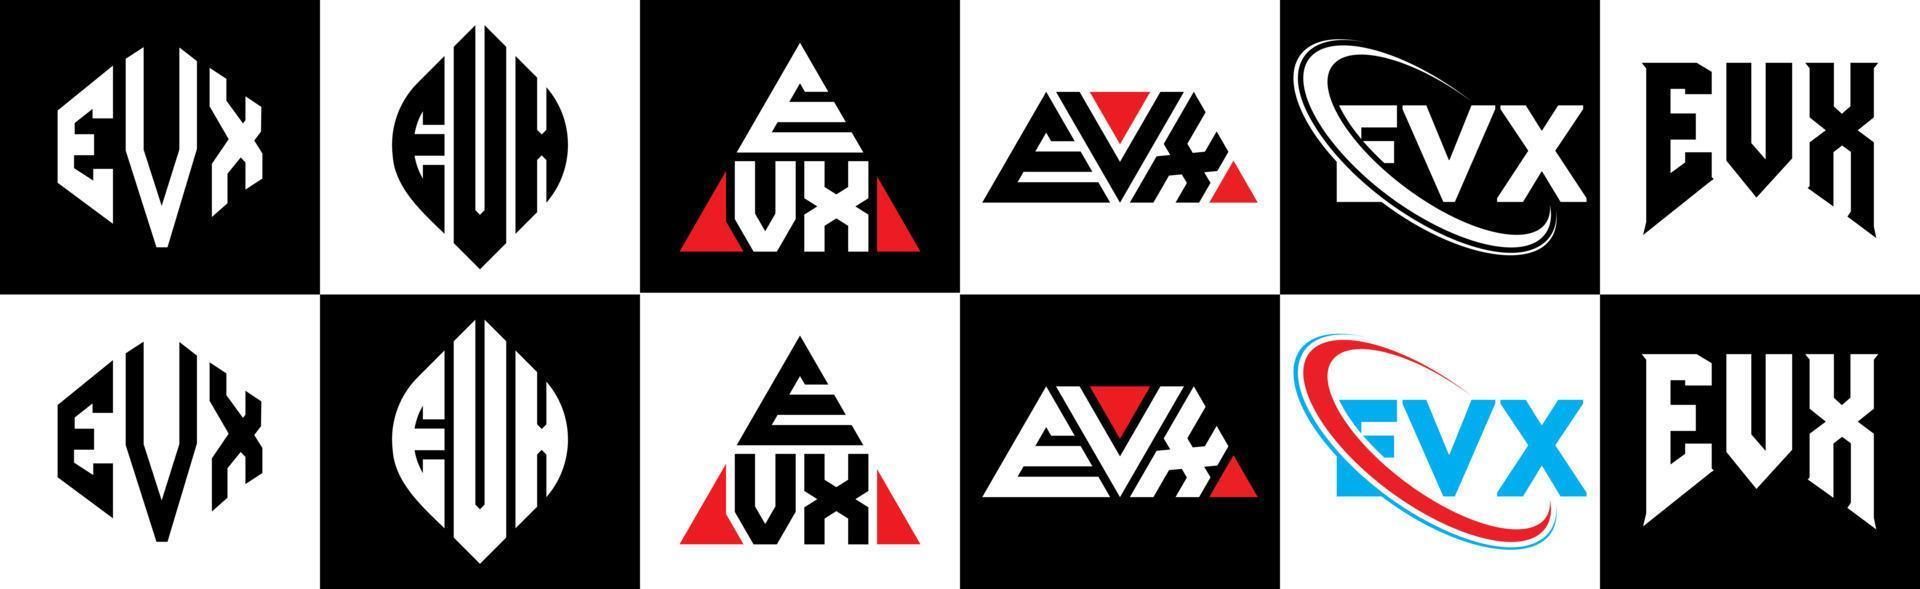 Diseño de logotipo de letra evx en seis estilos. polígono evx, círculo, triángulo, hexágono, estilo plano y simple con logotipo de letra de variación de color blanco y negro en una mesa de trabajo. logotipo minimalista y clásico de evx vector